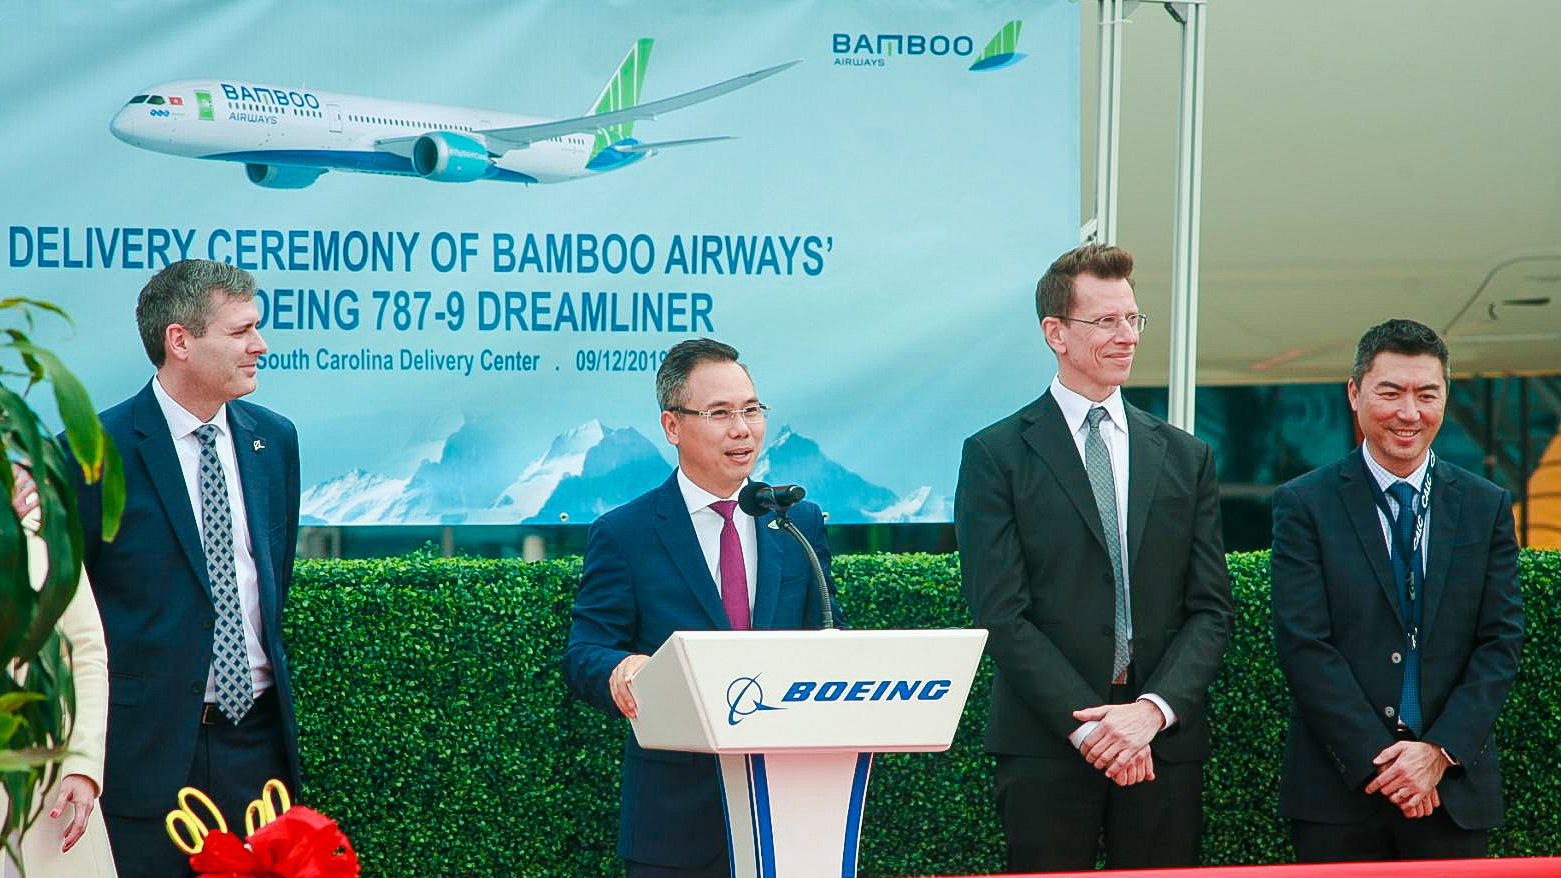 Phó Chủ tịchp/Bamboo Airways Đặng Tất Thắng phát biểu trong khuôn khổ sự kiện Bamboo Airways tiếp nhận bàn giao máy bay Boeing 787-9 Dreamliner đầu tiên tại Mỹ